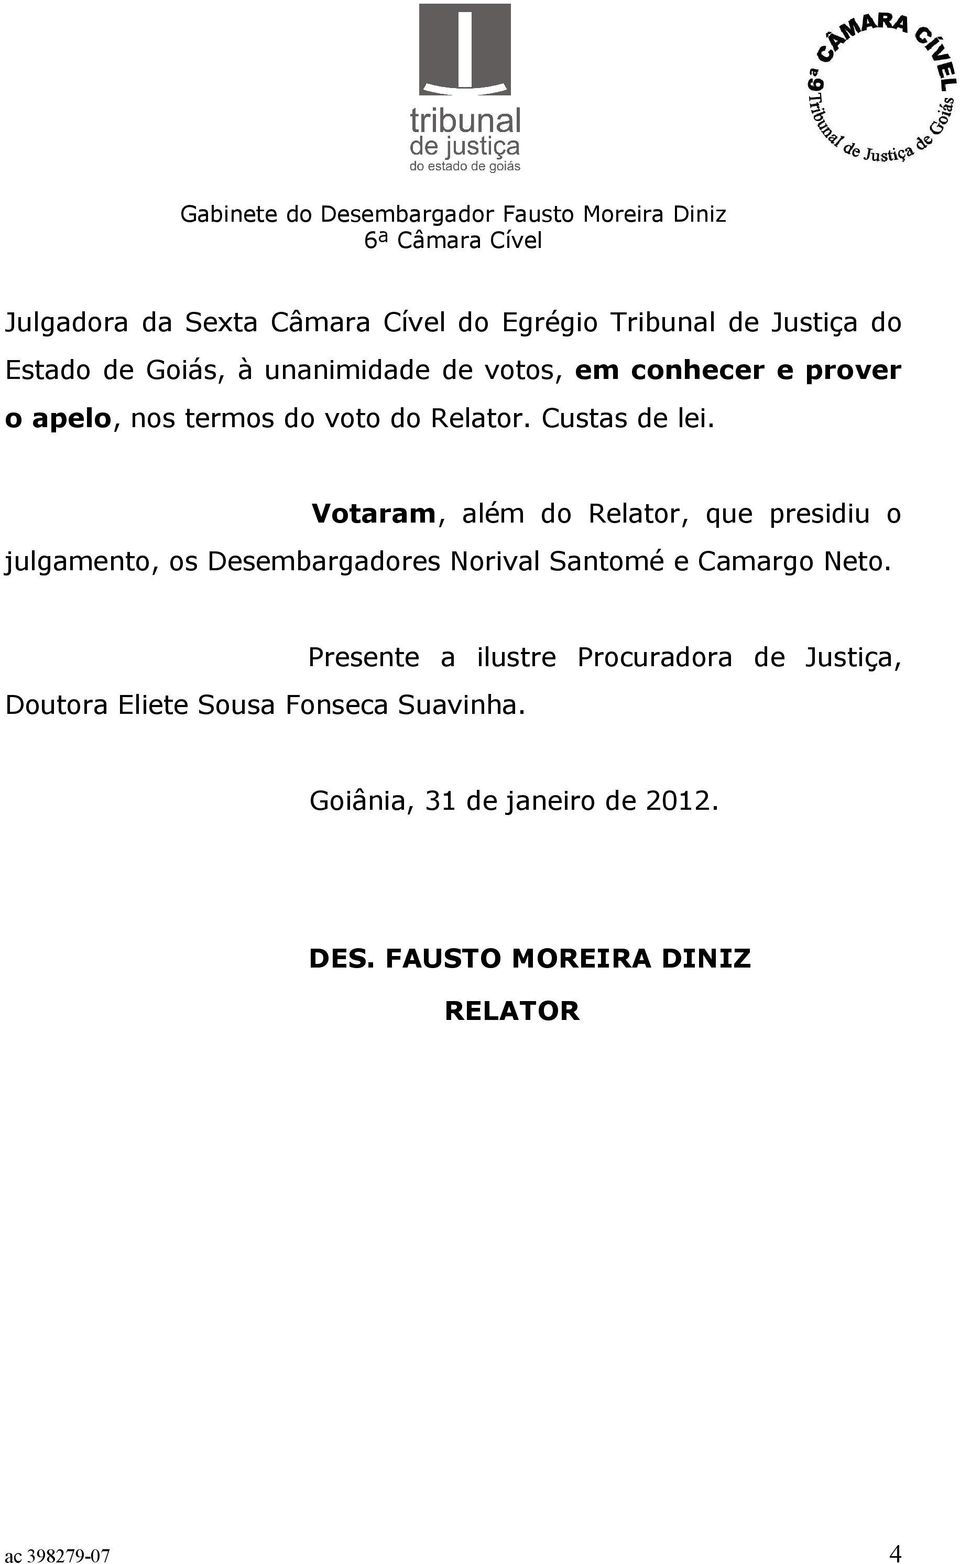 Votaram, além do Relator, que presidiu o julgamento, os Desembargadores Norival Santomé e Camargo Neto.